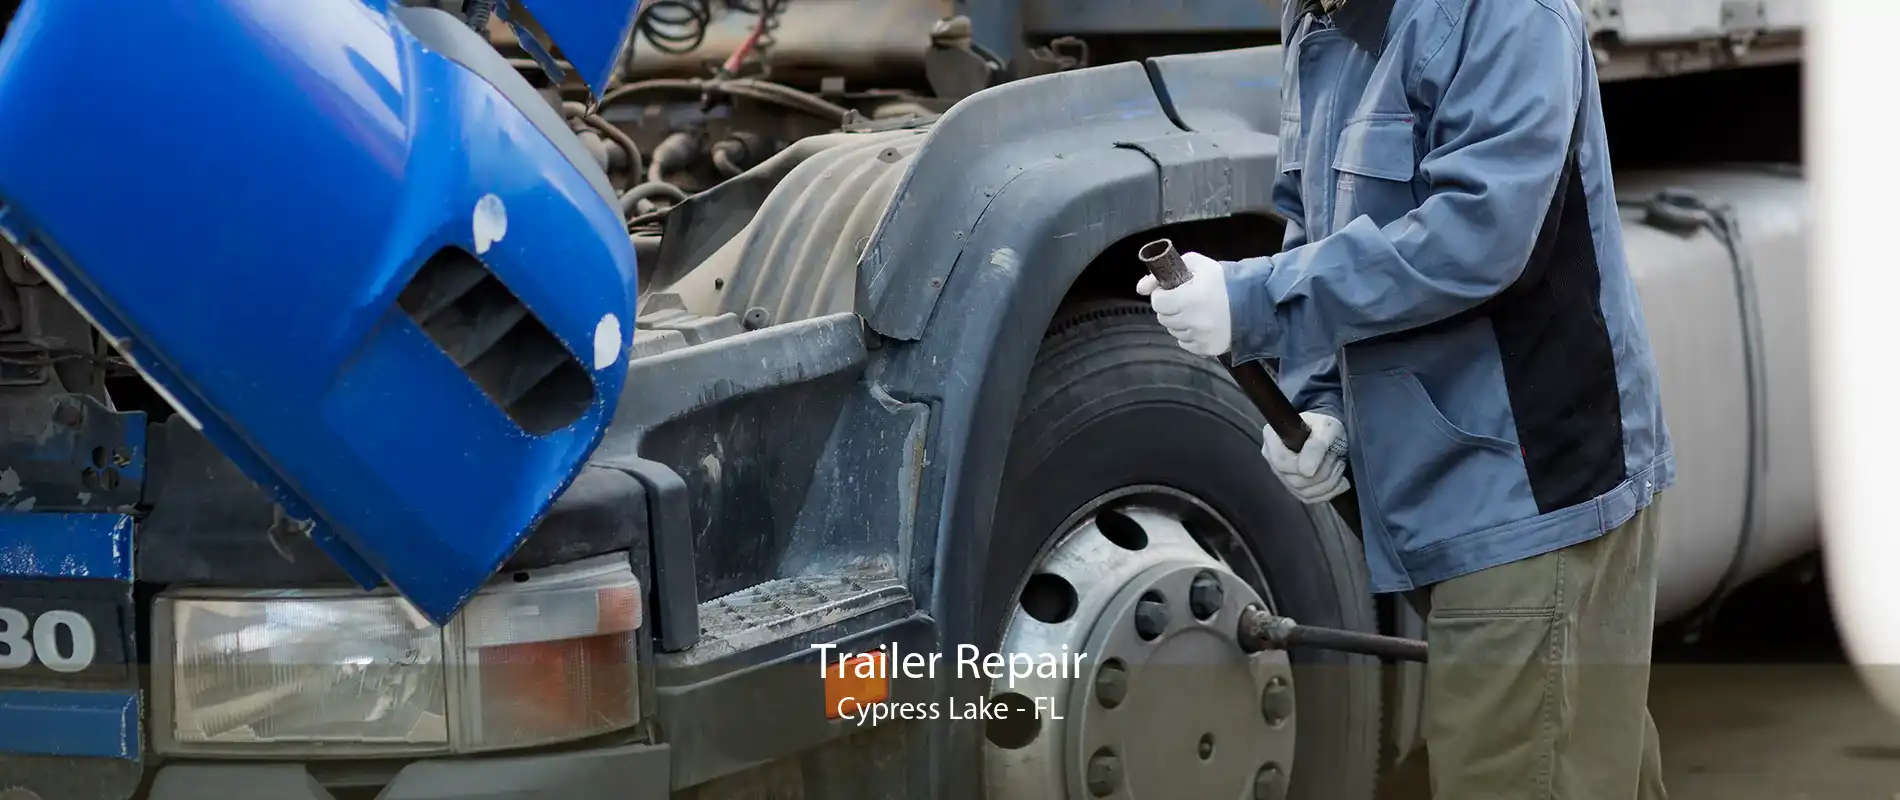 Trailer Repair Cypress Lake - FL